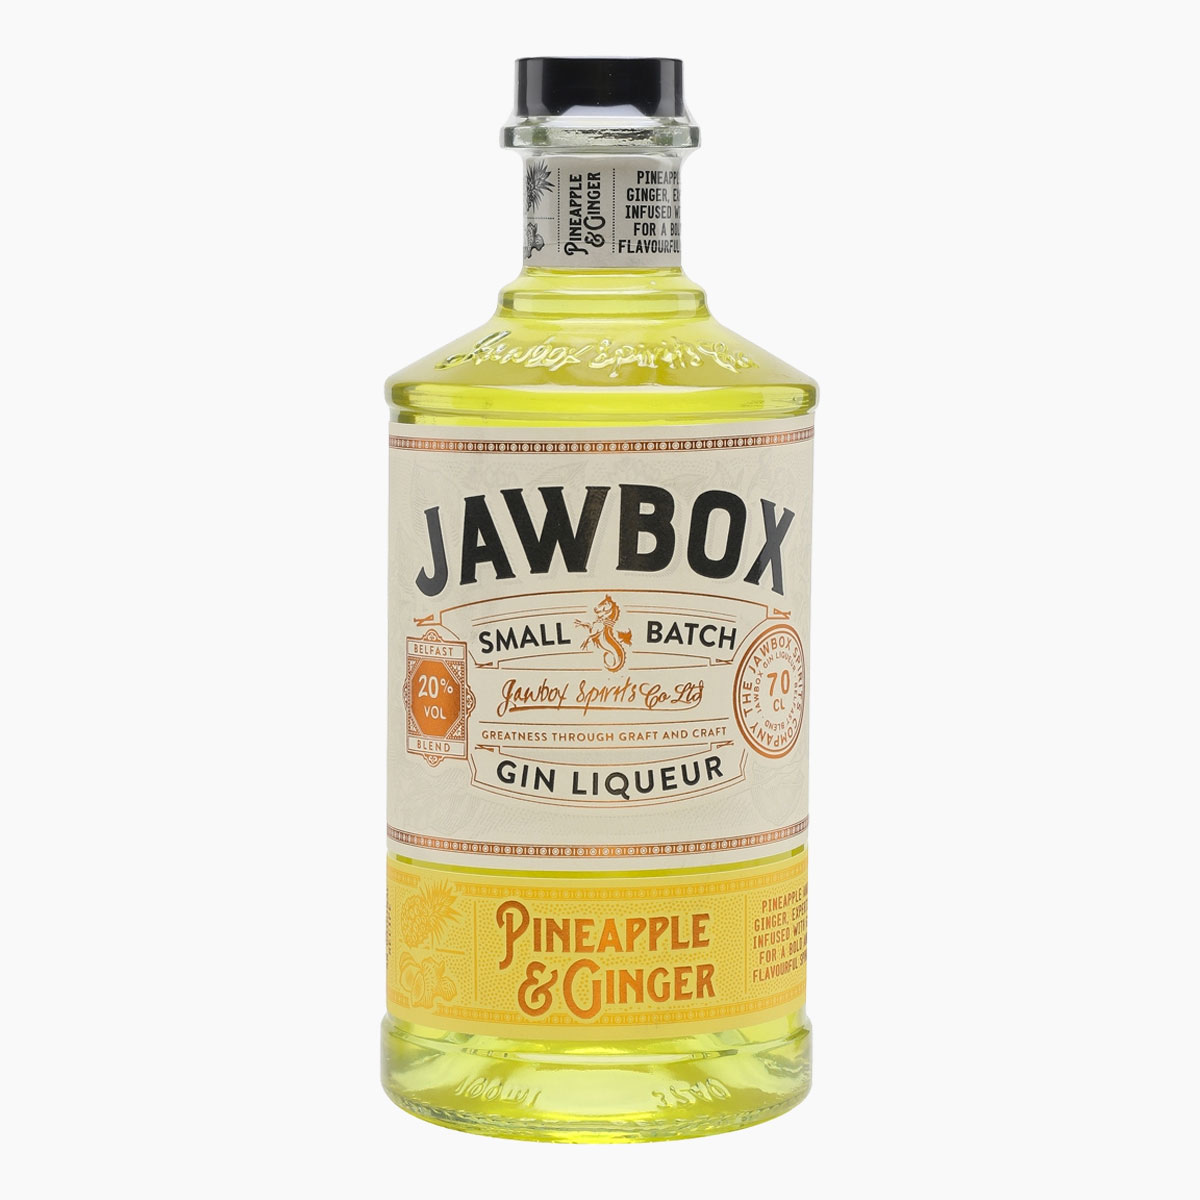 Brug Jawbox Pineapple & Ginger Ginlikør til en forbedret oplevelse